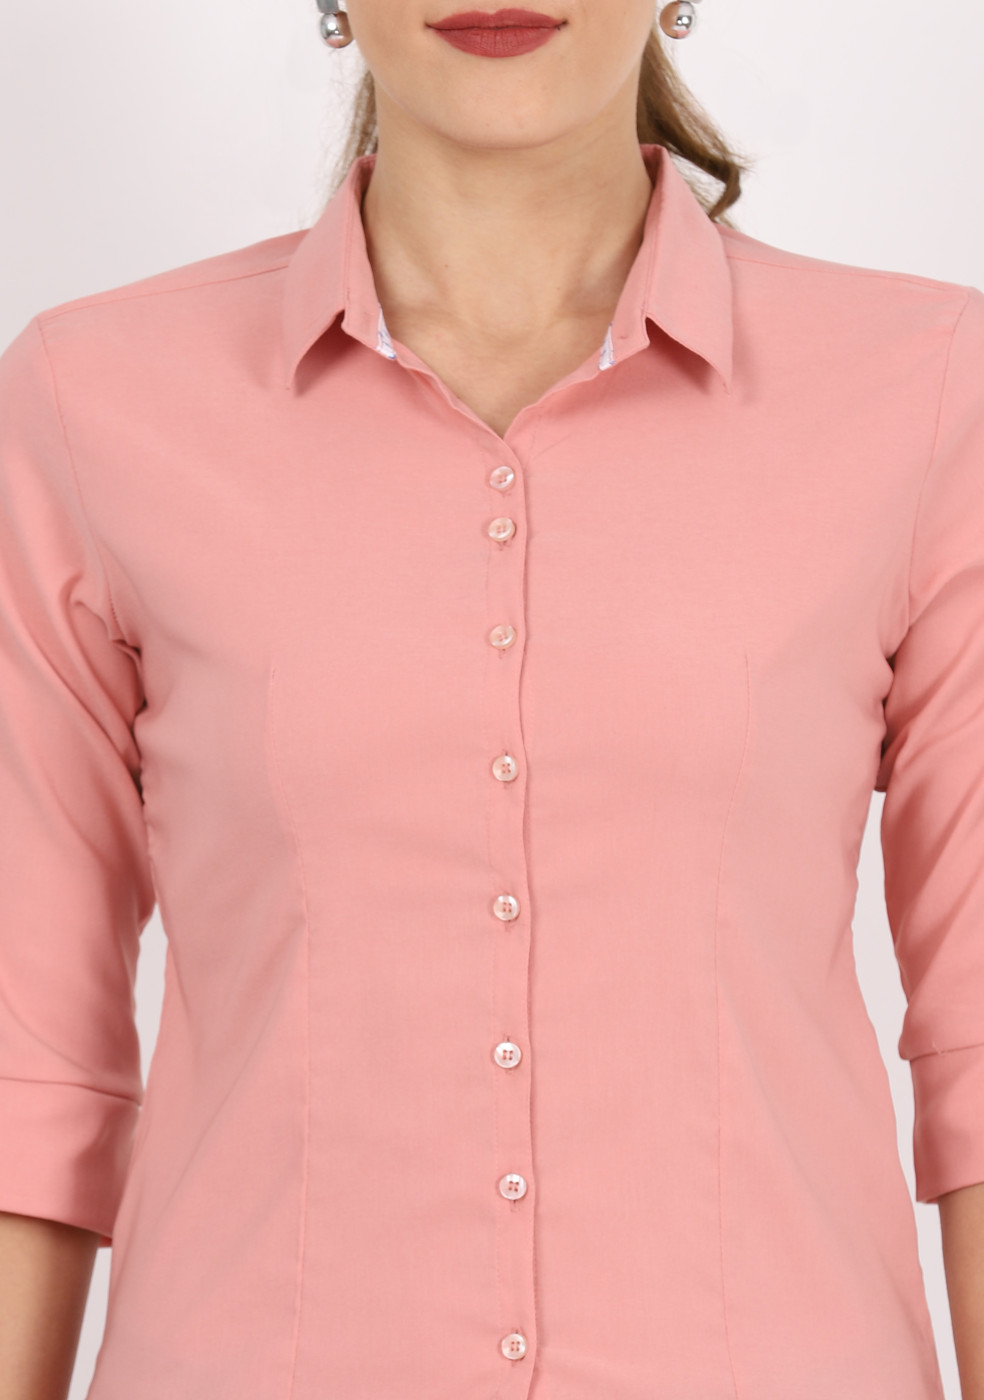 Zx3 Plain Formal Shirt For Women